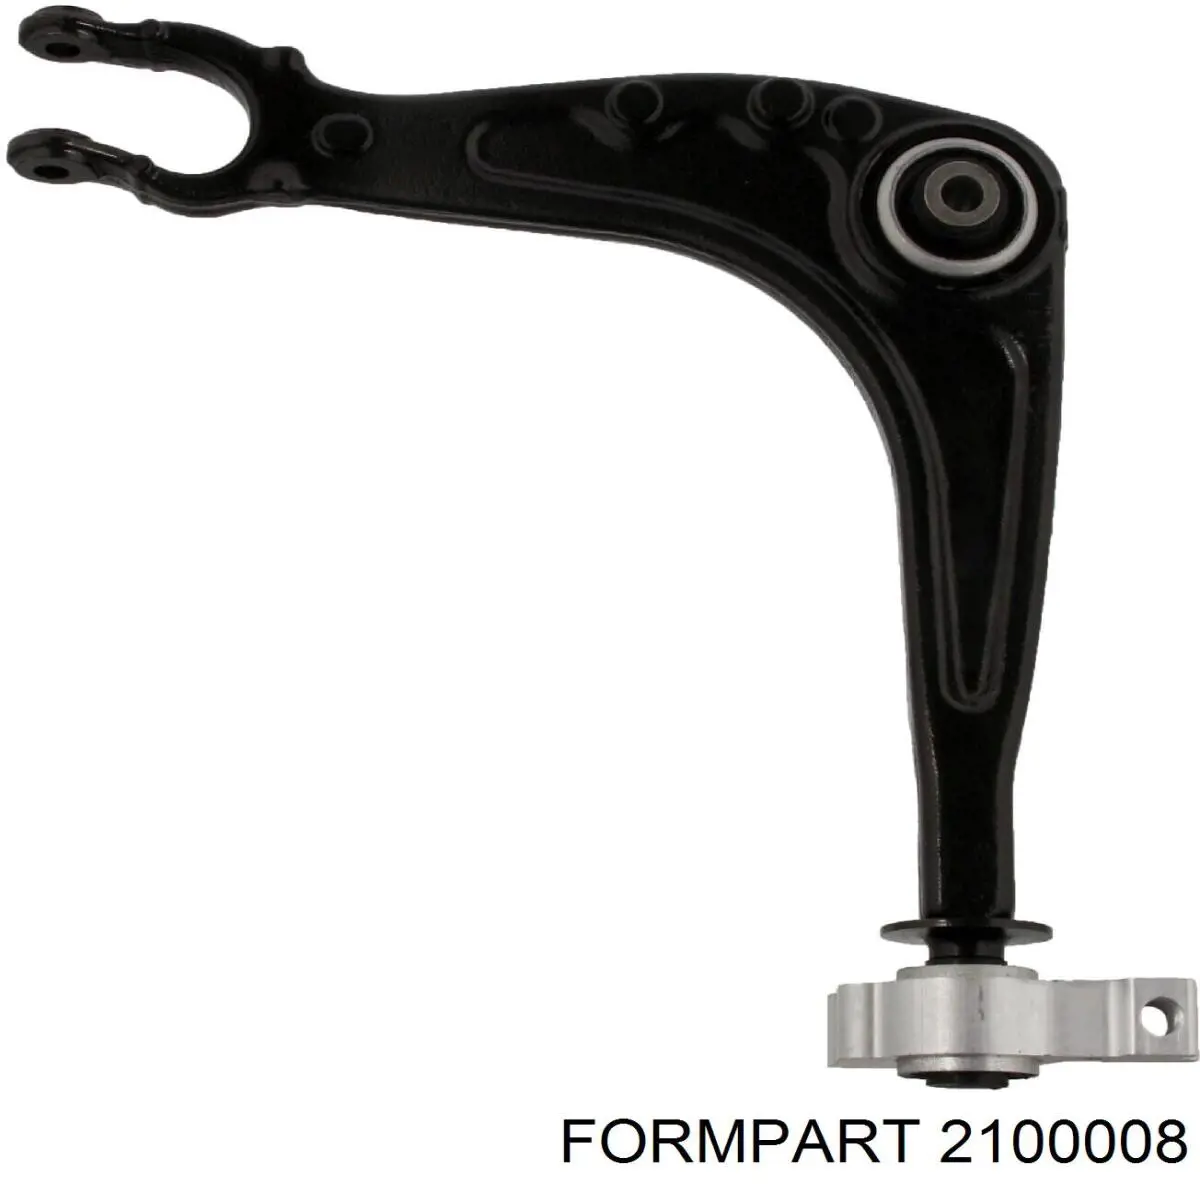 2100008 Formpart/Otoform bloco silencioso dianteiro do braço oscilante inferior